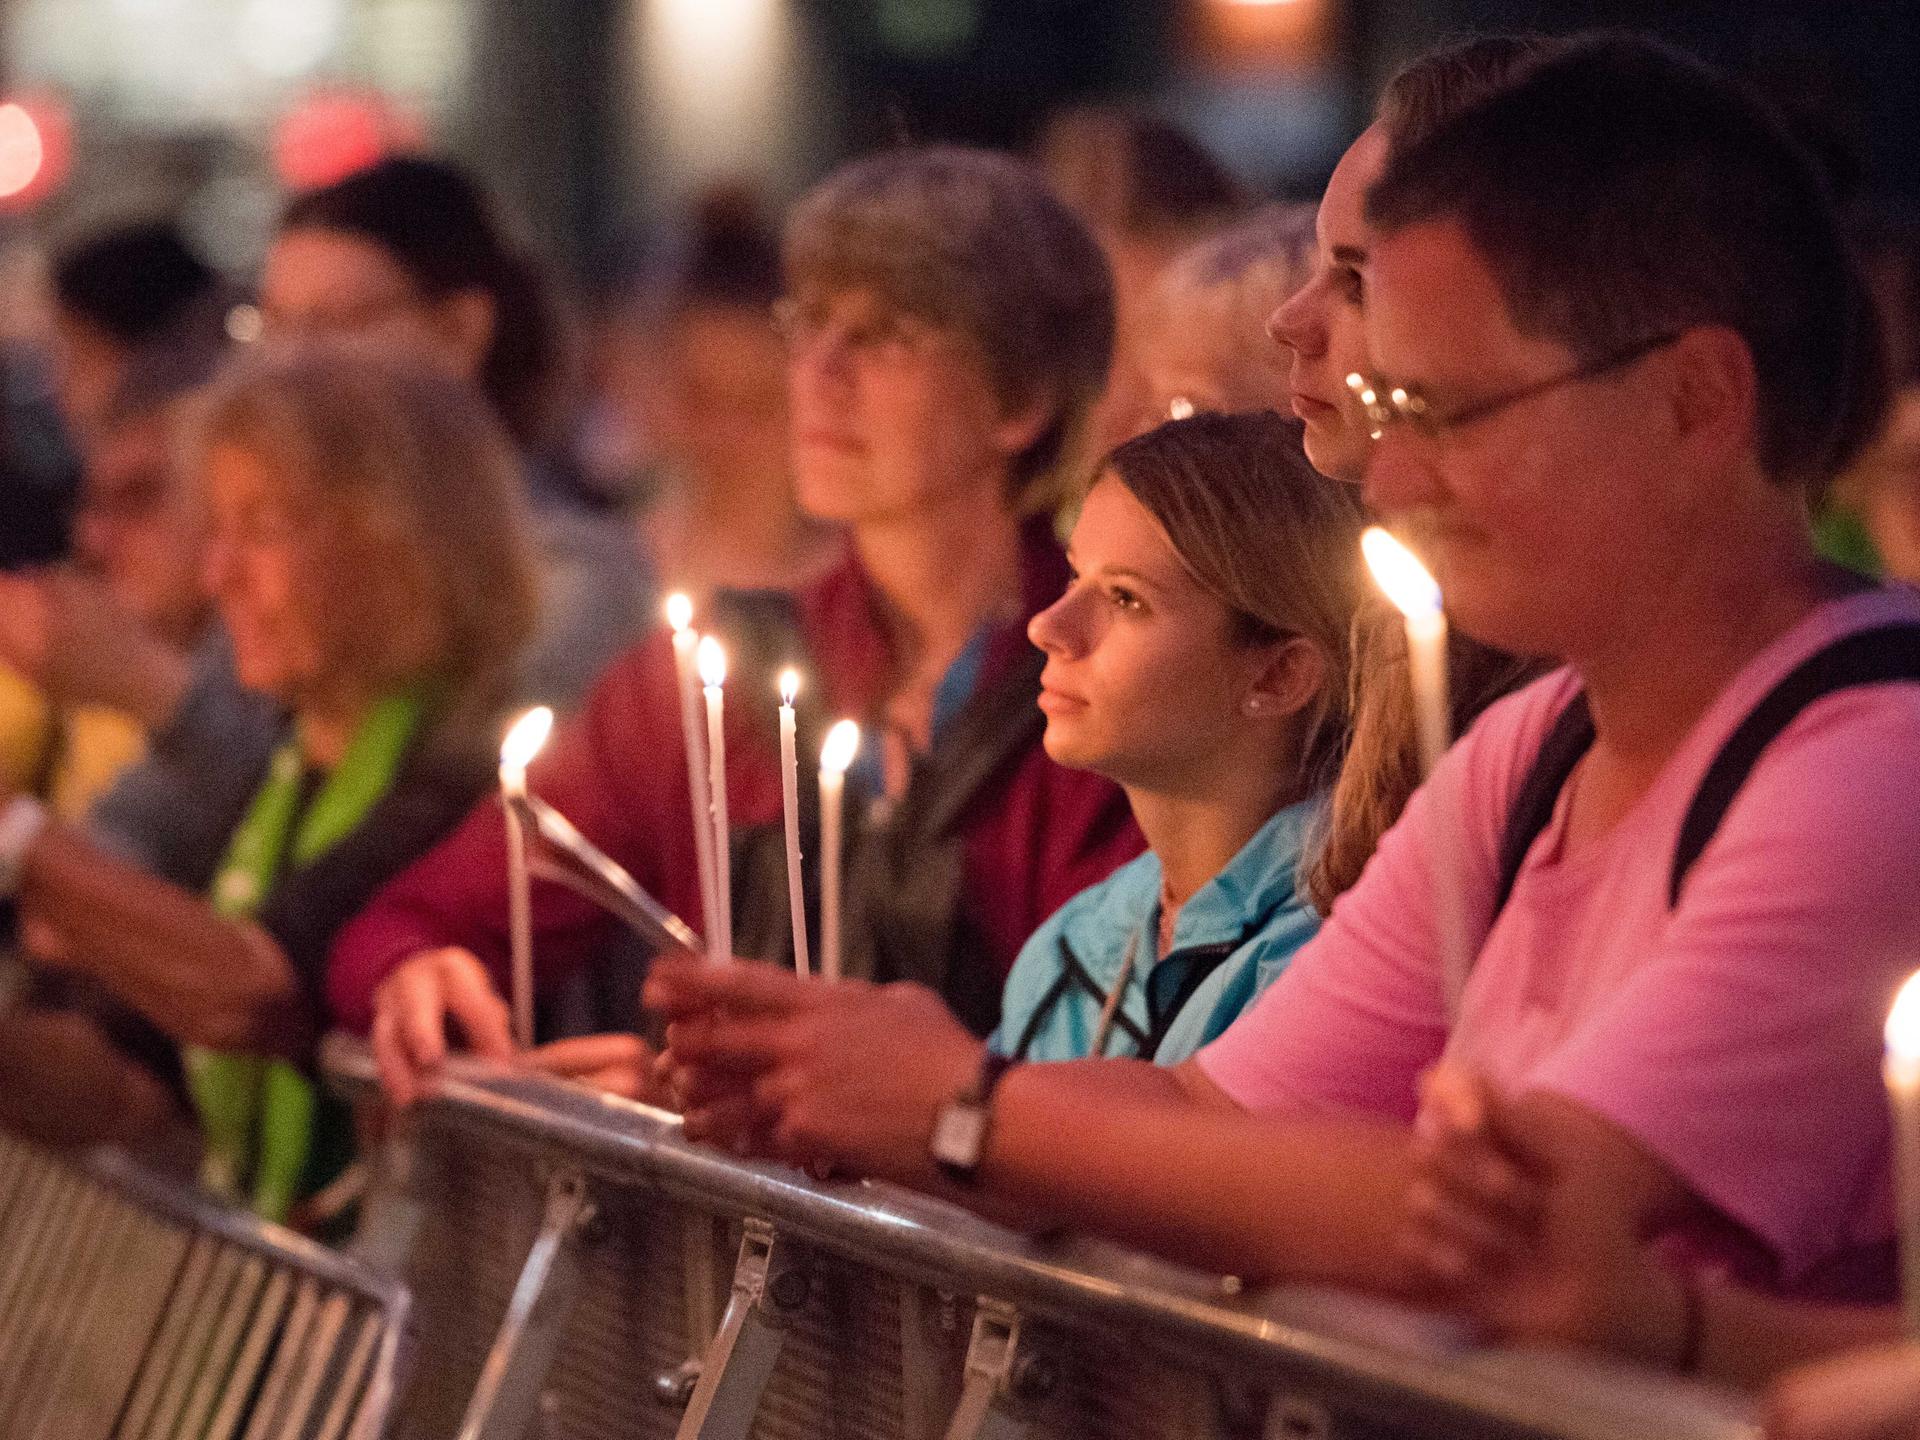 Viele Menschen halten Kerzen in der Hand und blicken konzentriert nach links aus dem Bild heraus.